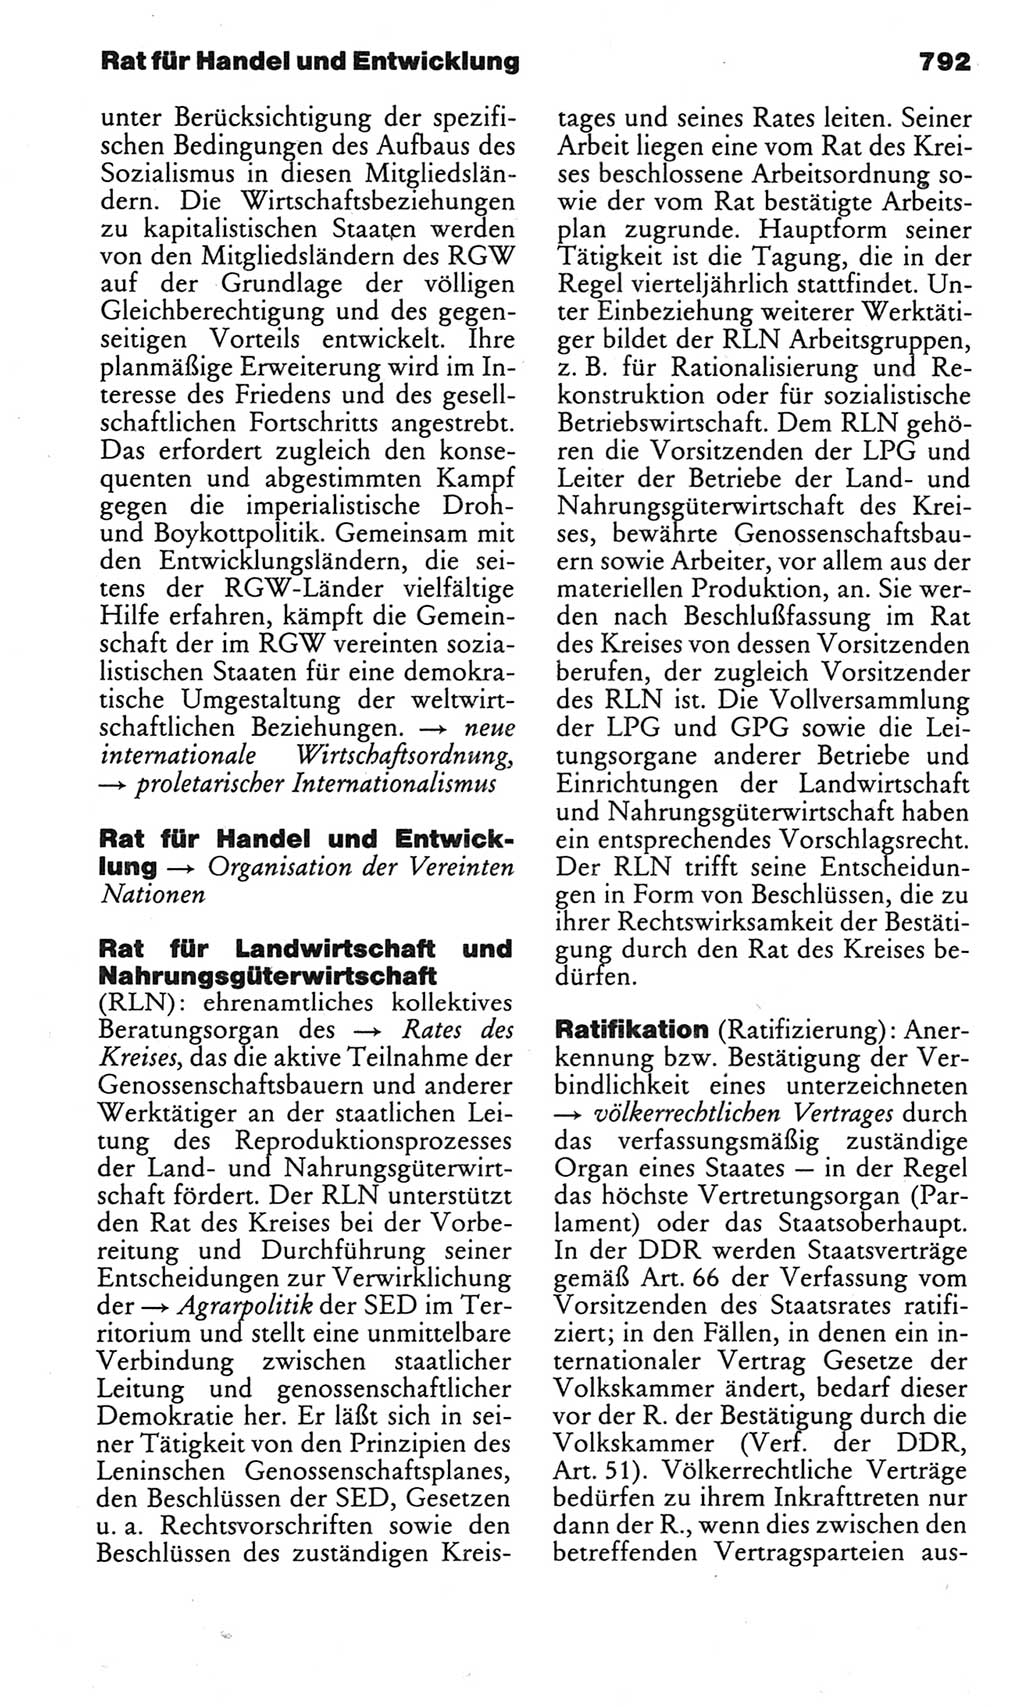 Kleines politisches Wörterbuch [Deutsche Demokratische Republik (DDR)] 1983, Seite 792 (Kl. pol. Wb. DDR 1983, S. 792)